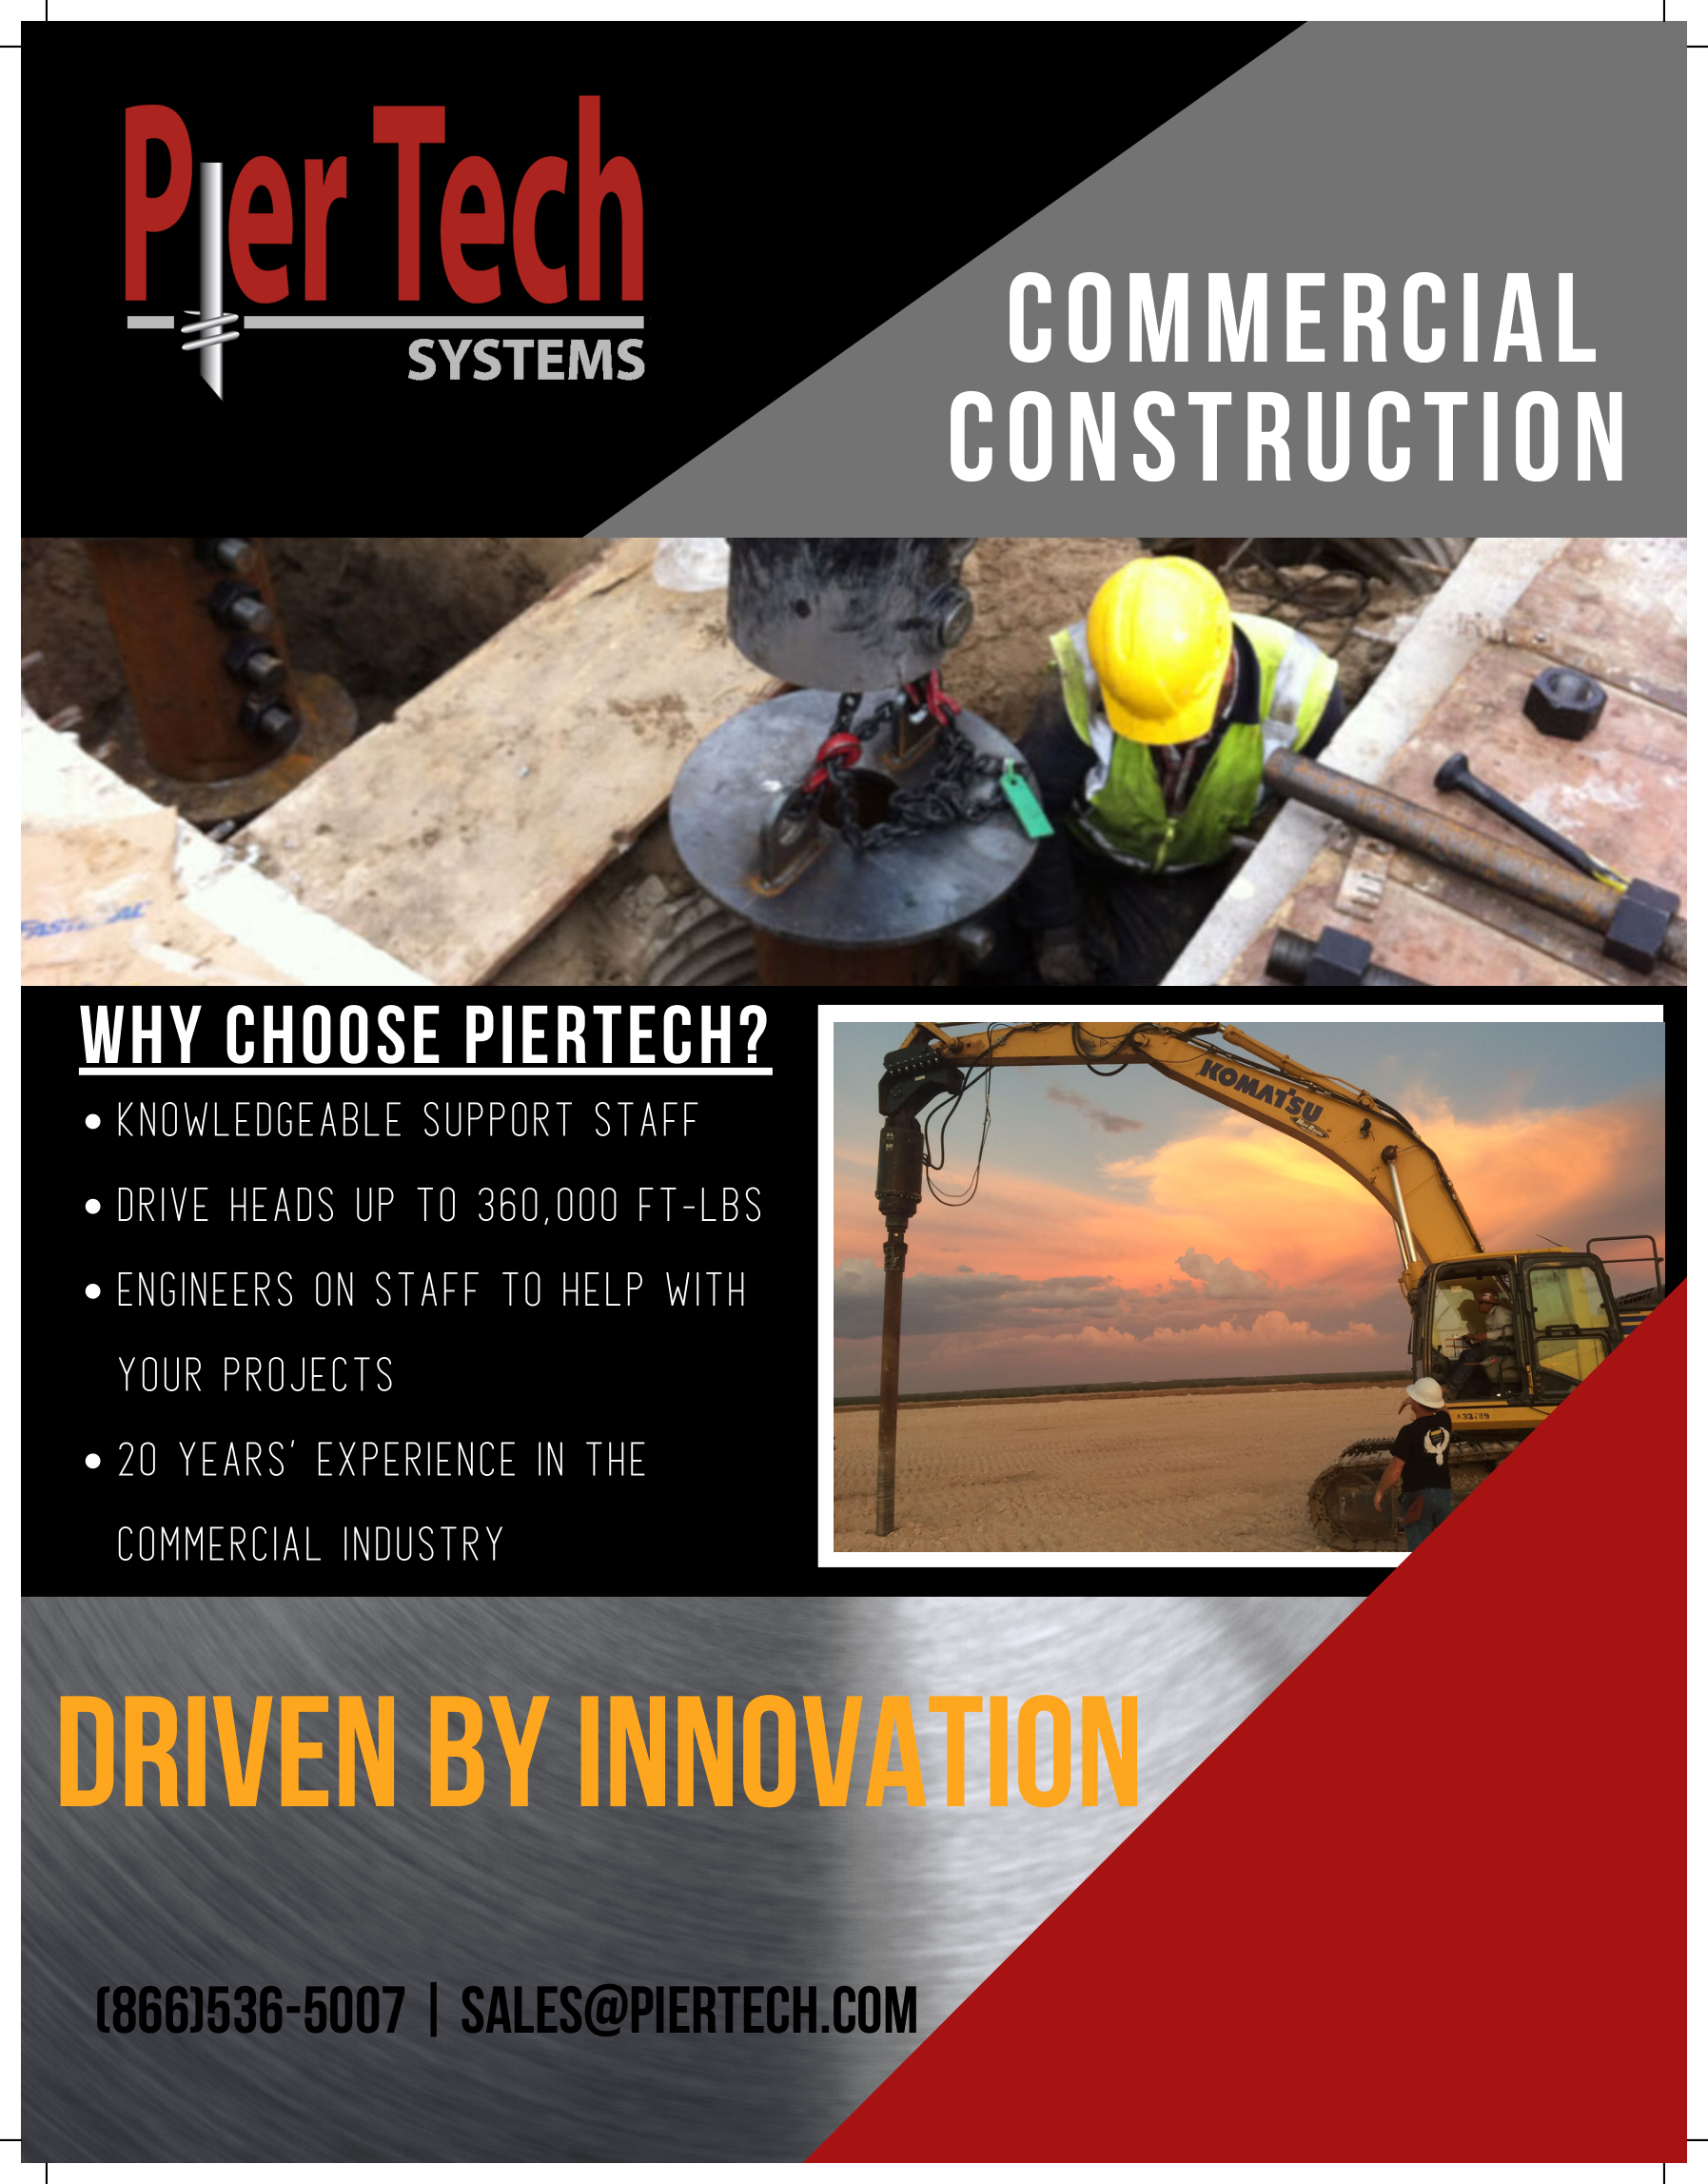 Pier tech Commercial Construction-2